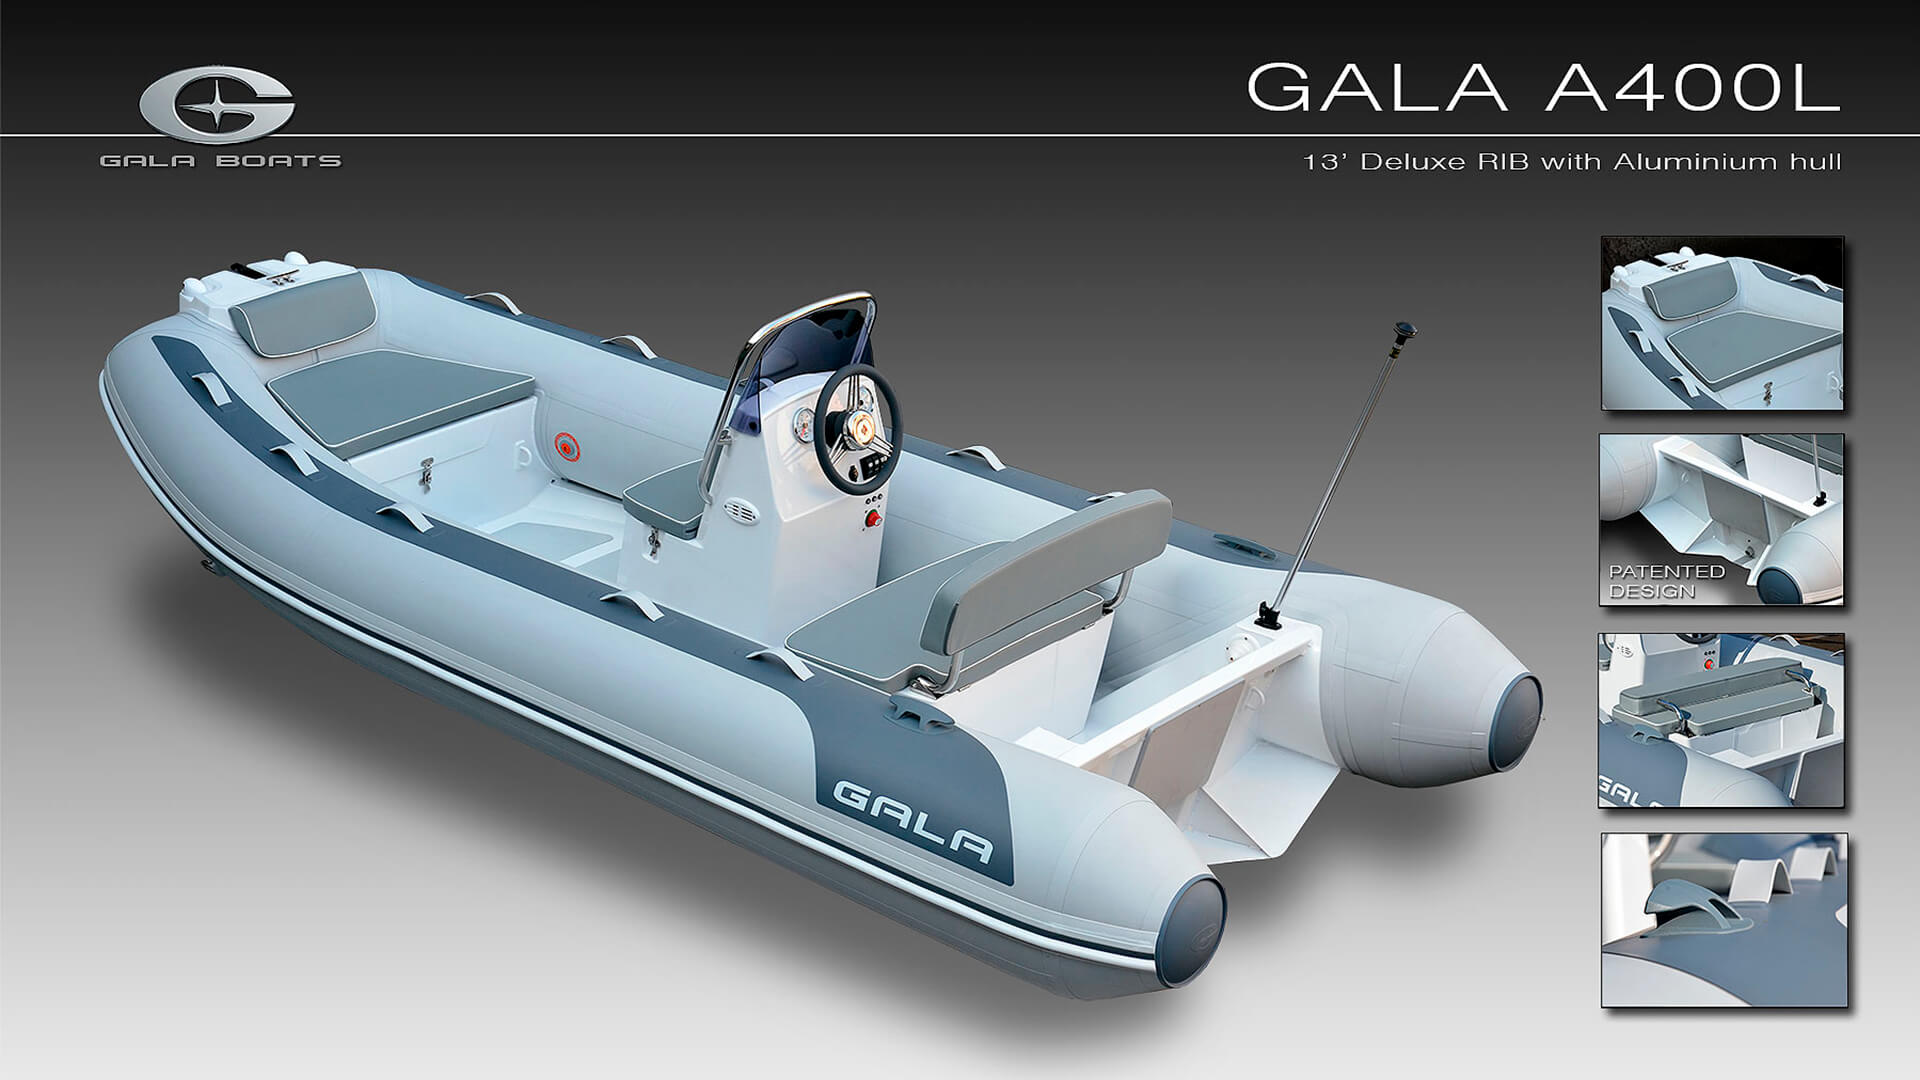 Надувная лодка с жестким алюминиевым дном GALA Atlantis A400L, Надувная лодка с жестким дном GALA Atlantis A400L, Надувная лодка с жестким дном GALA A400L, Надувная лодка GALA A400L, Надувная лодка GALA A400L, GALA A400L, лодка с жестким дном, алюминиевый риб, алюминиевый RIB, RIB, тендерная лодка, тендер для яхты